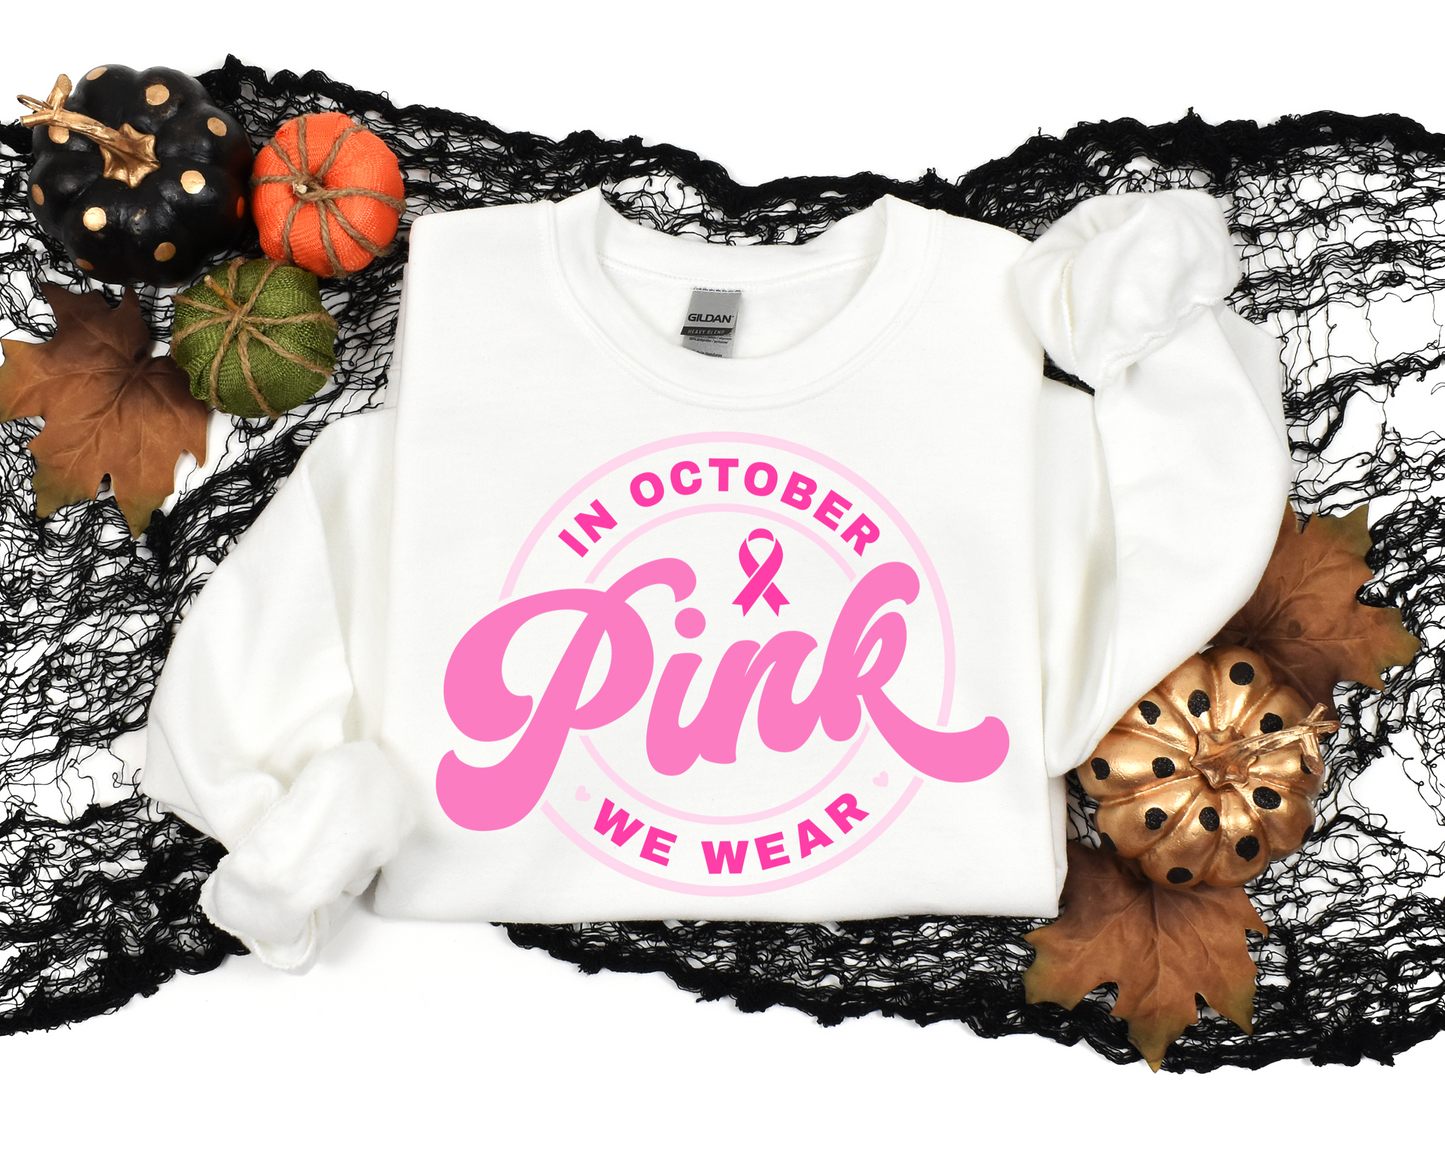 In October, We Wear Pink Crewneck